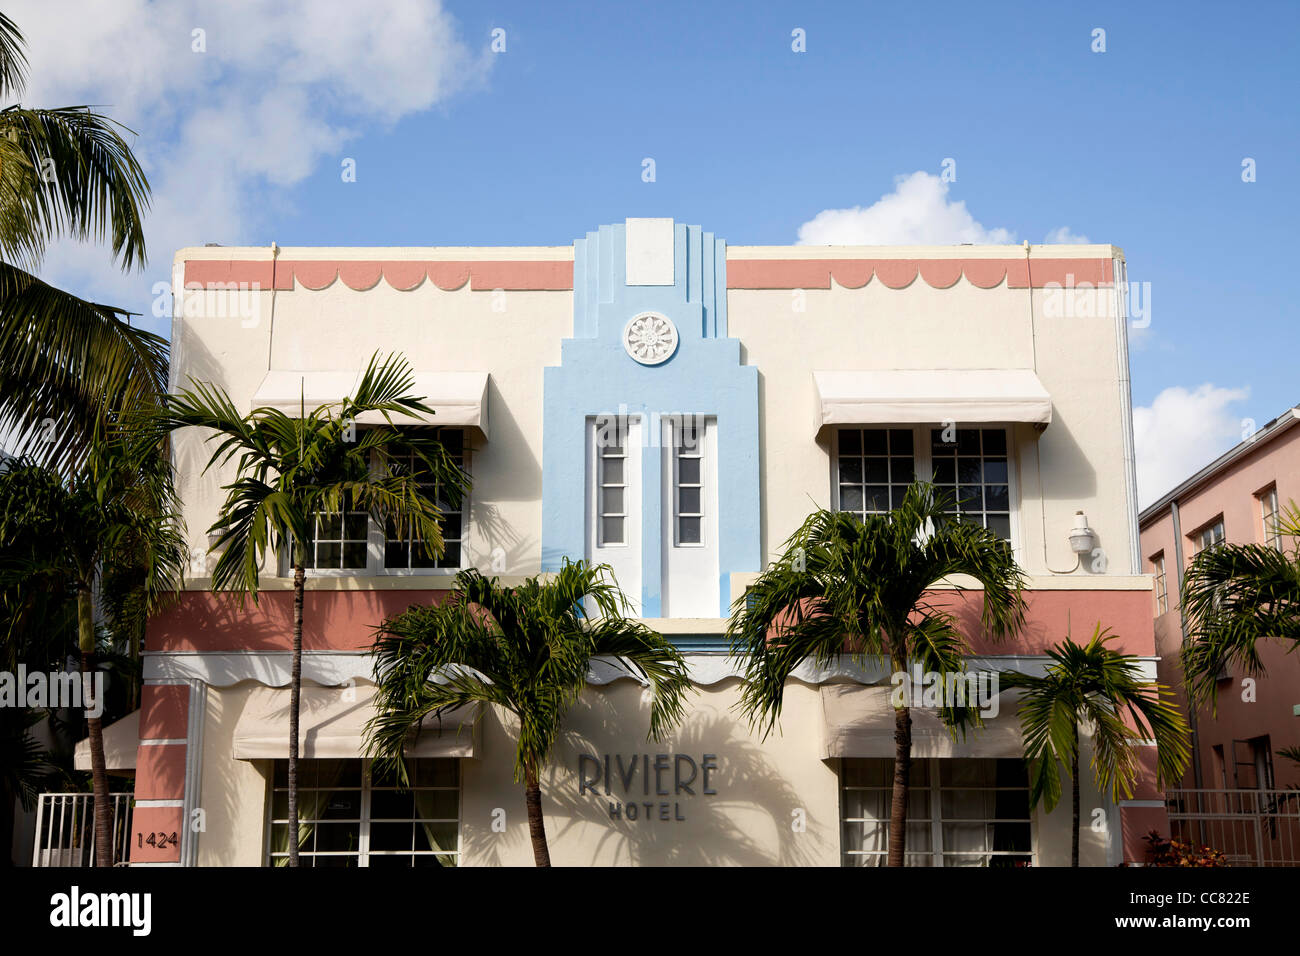 Art Deco Hotel Riviere, South Beach, Miami, Florida, Stati Uniti d'America Foto Stock